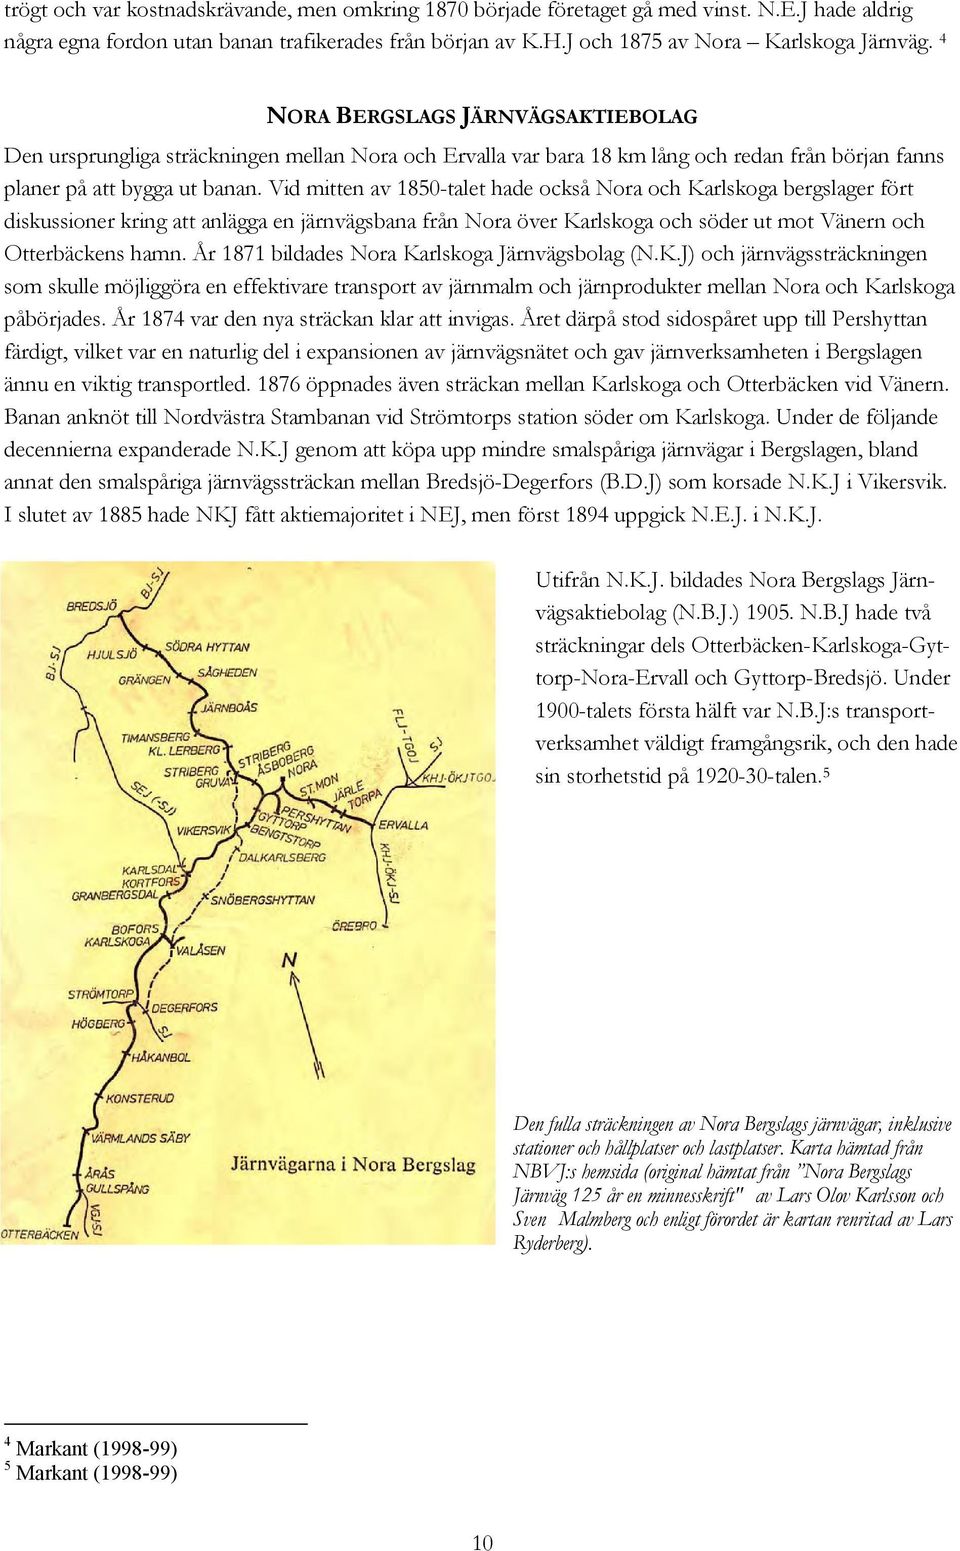 Vid mitten av 1850-talet hade också Nora och Karlskoga bergslager fört diskussioner kring att anlägga en järnvägsbana från Nora över Karlskoga och söder ut mot Vänern och Otterbäckens hamn.